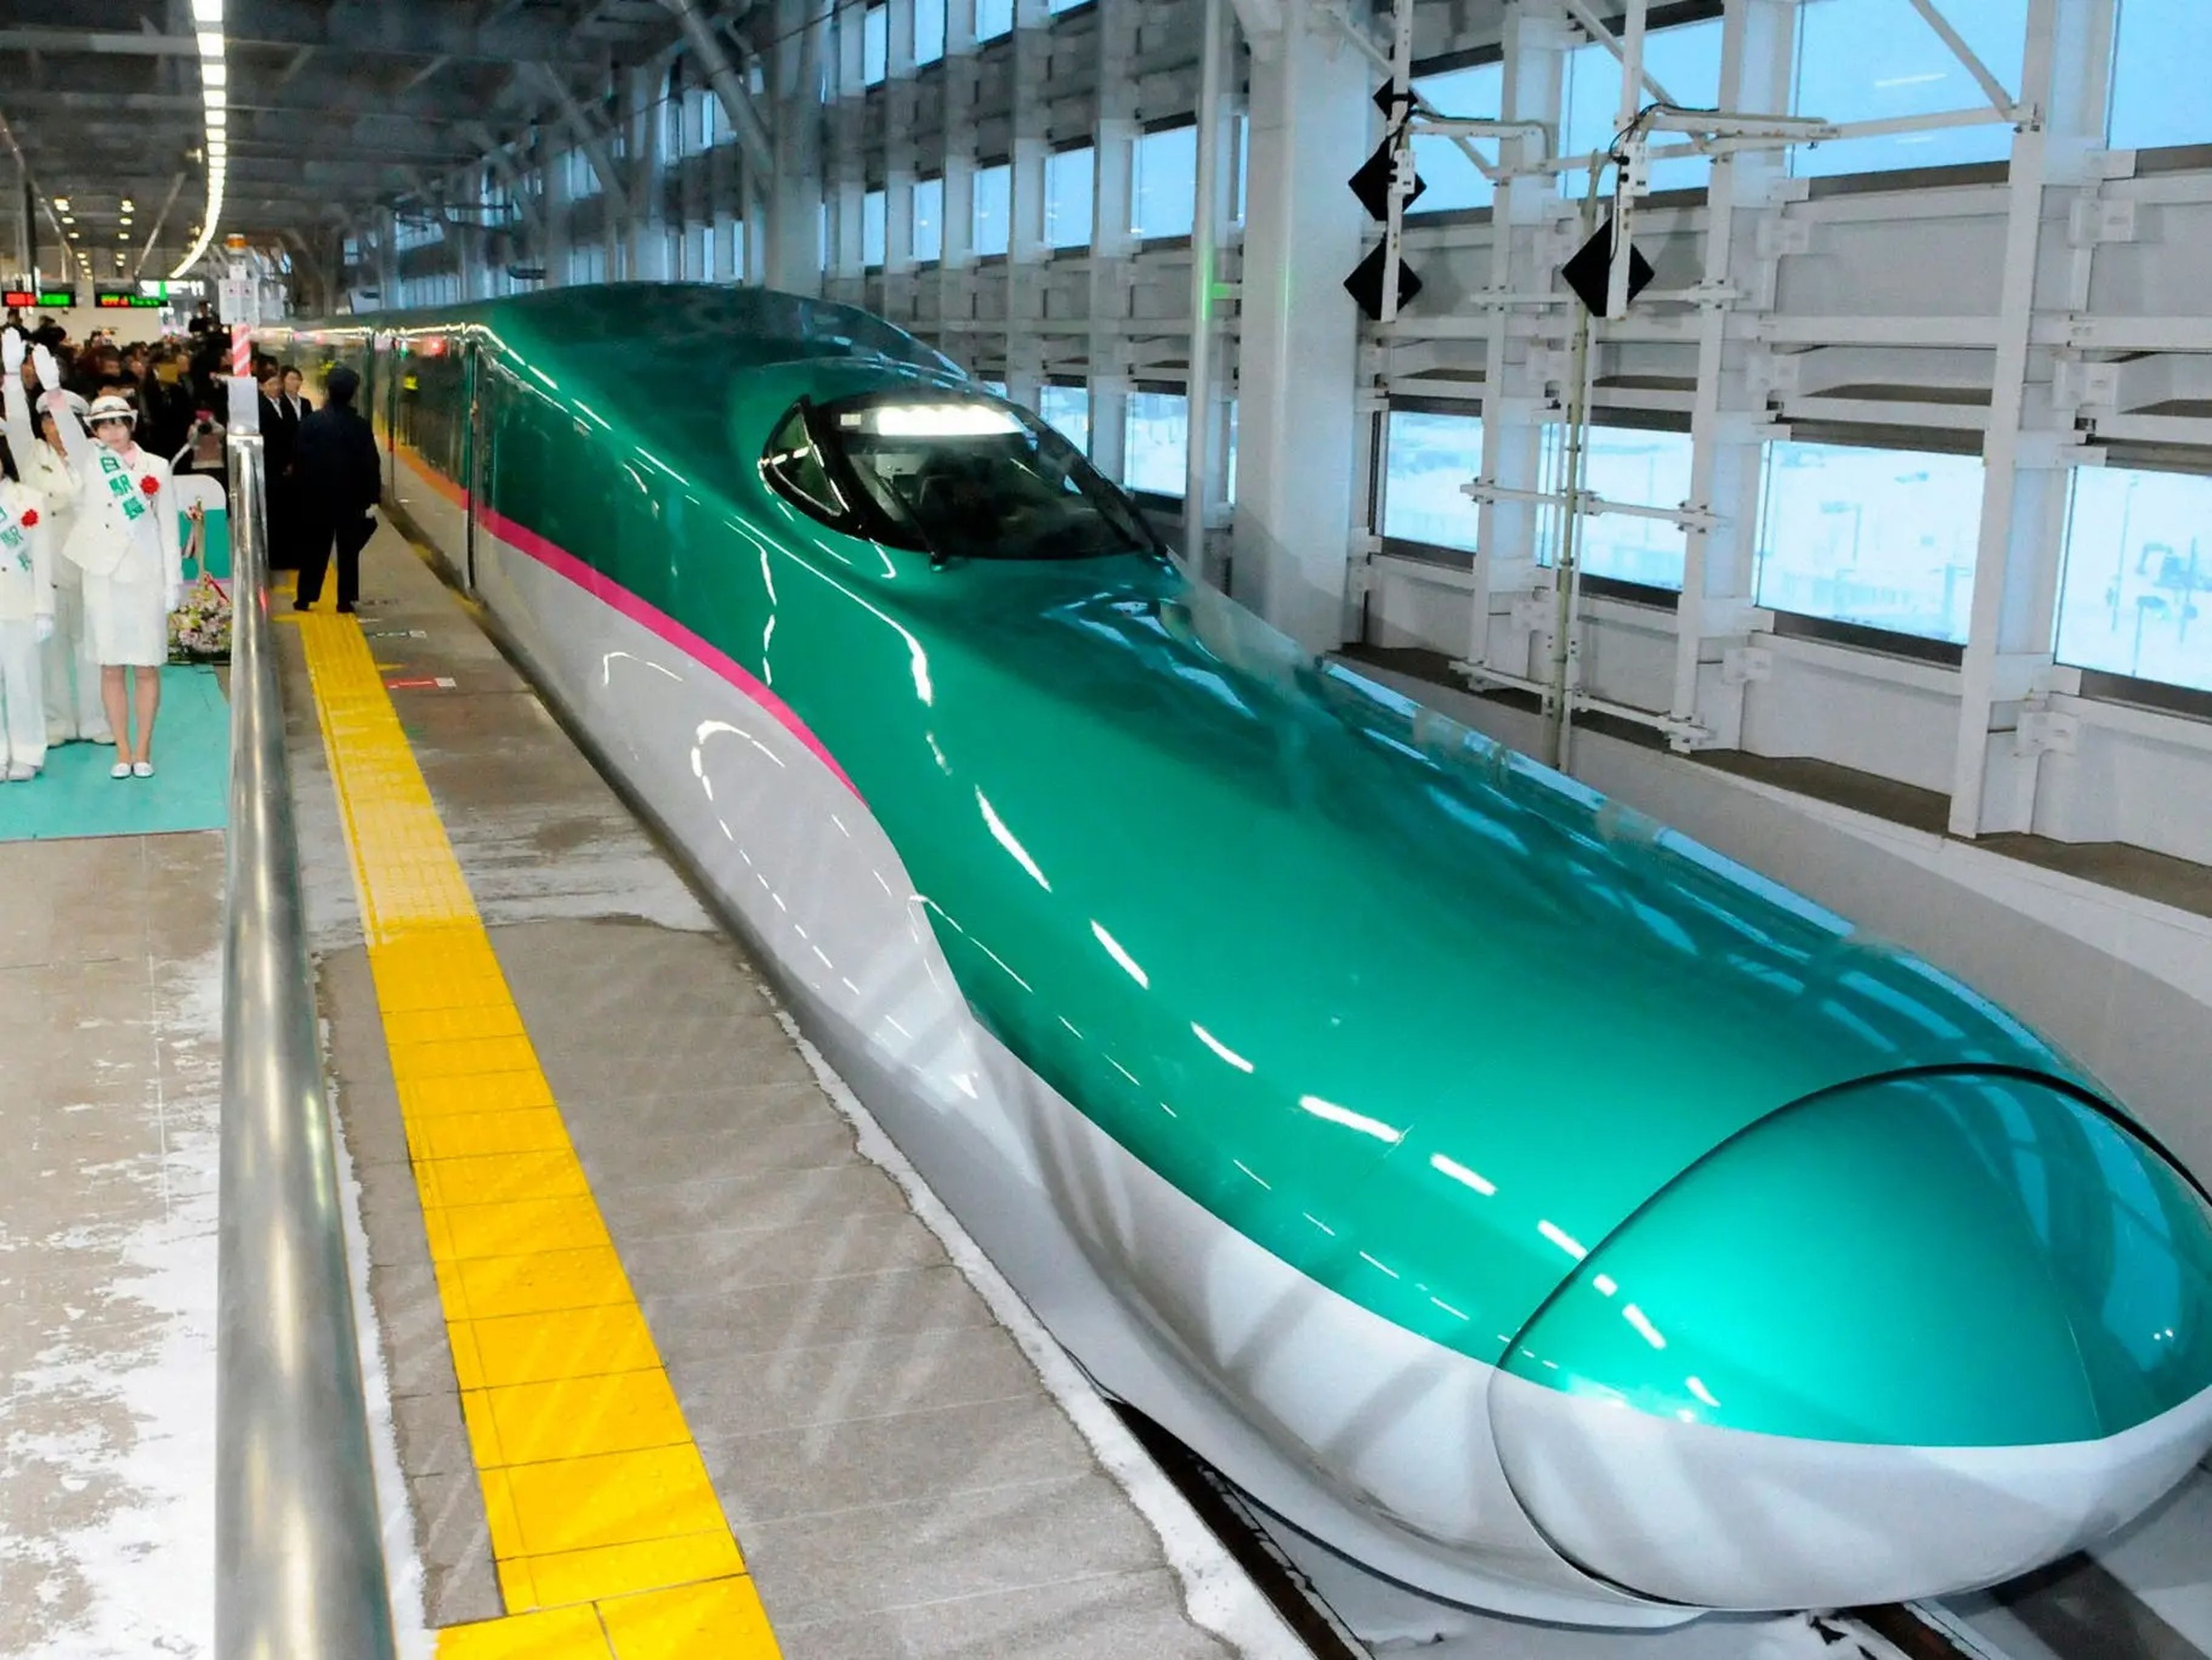 En la imagen, el tren bala Hayabusa. Este tren y el Komachi van hacia el norte y están unidos hasta cierto punto, en que se separan y toman direcciones distintas.